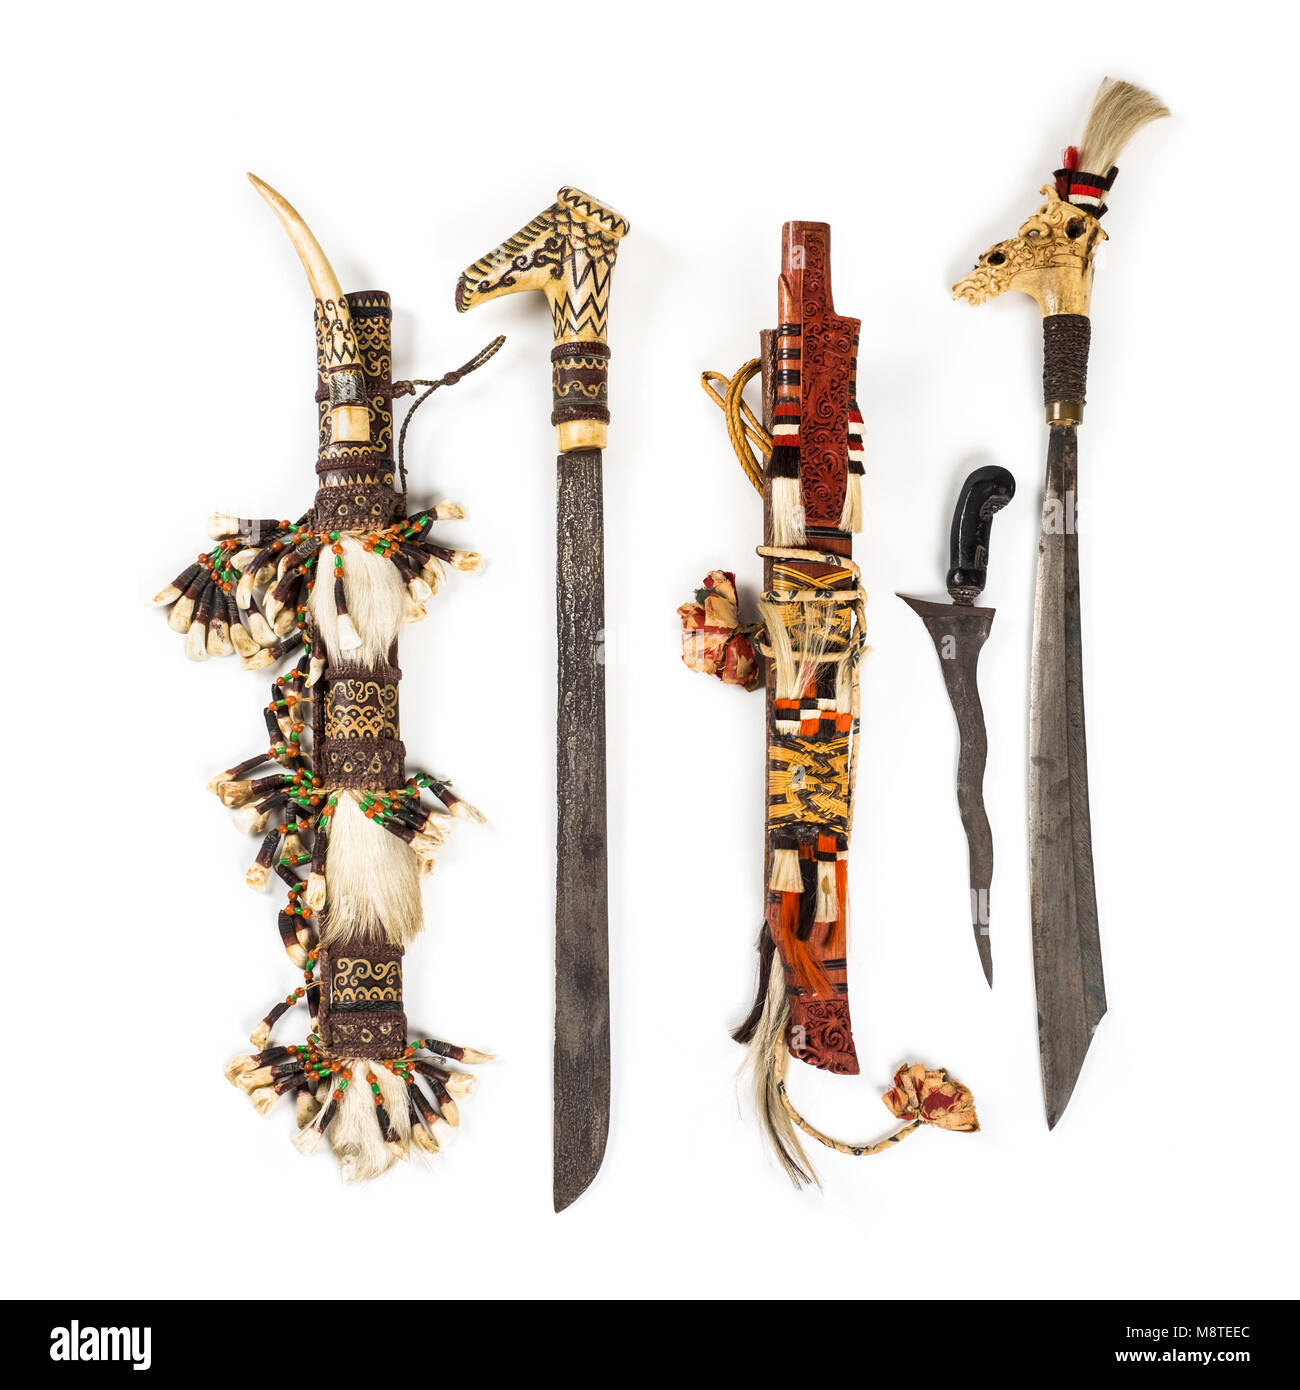 Par de Mundaú antiguos cuchillos / headhunting espadas ceremoniales de la población Dyak de Borneo, completo con vaina en madera original. Foto de stock